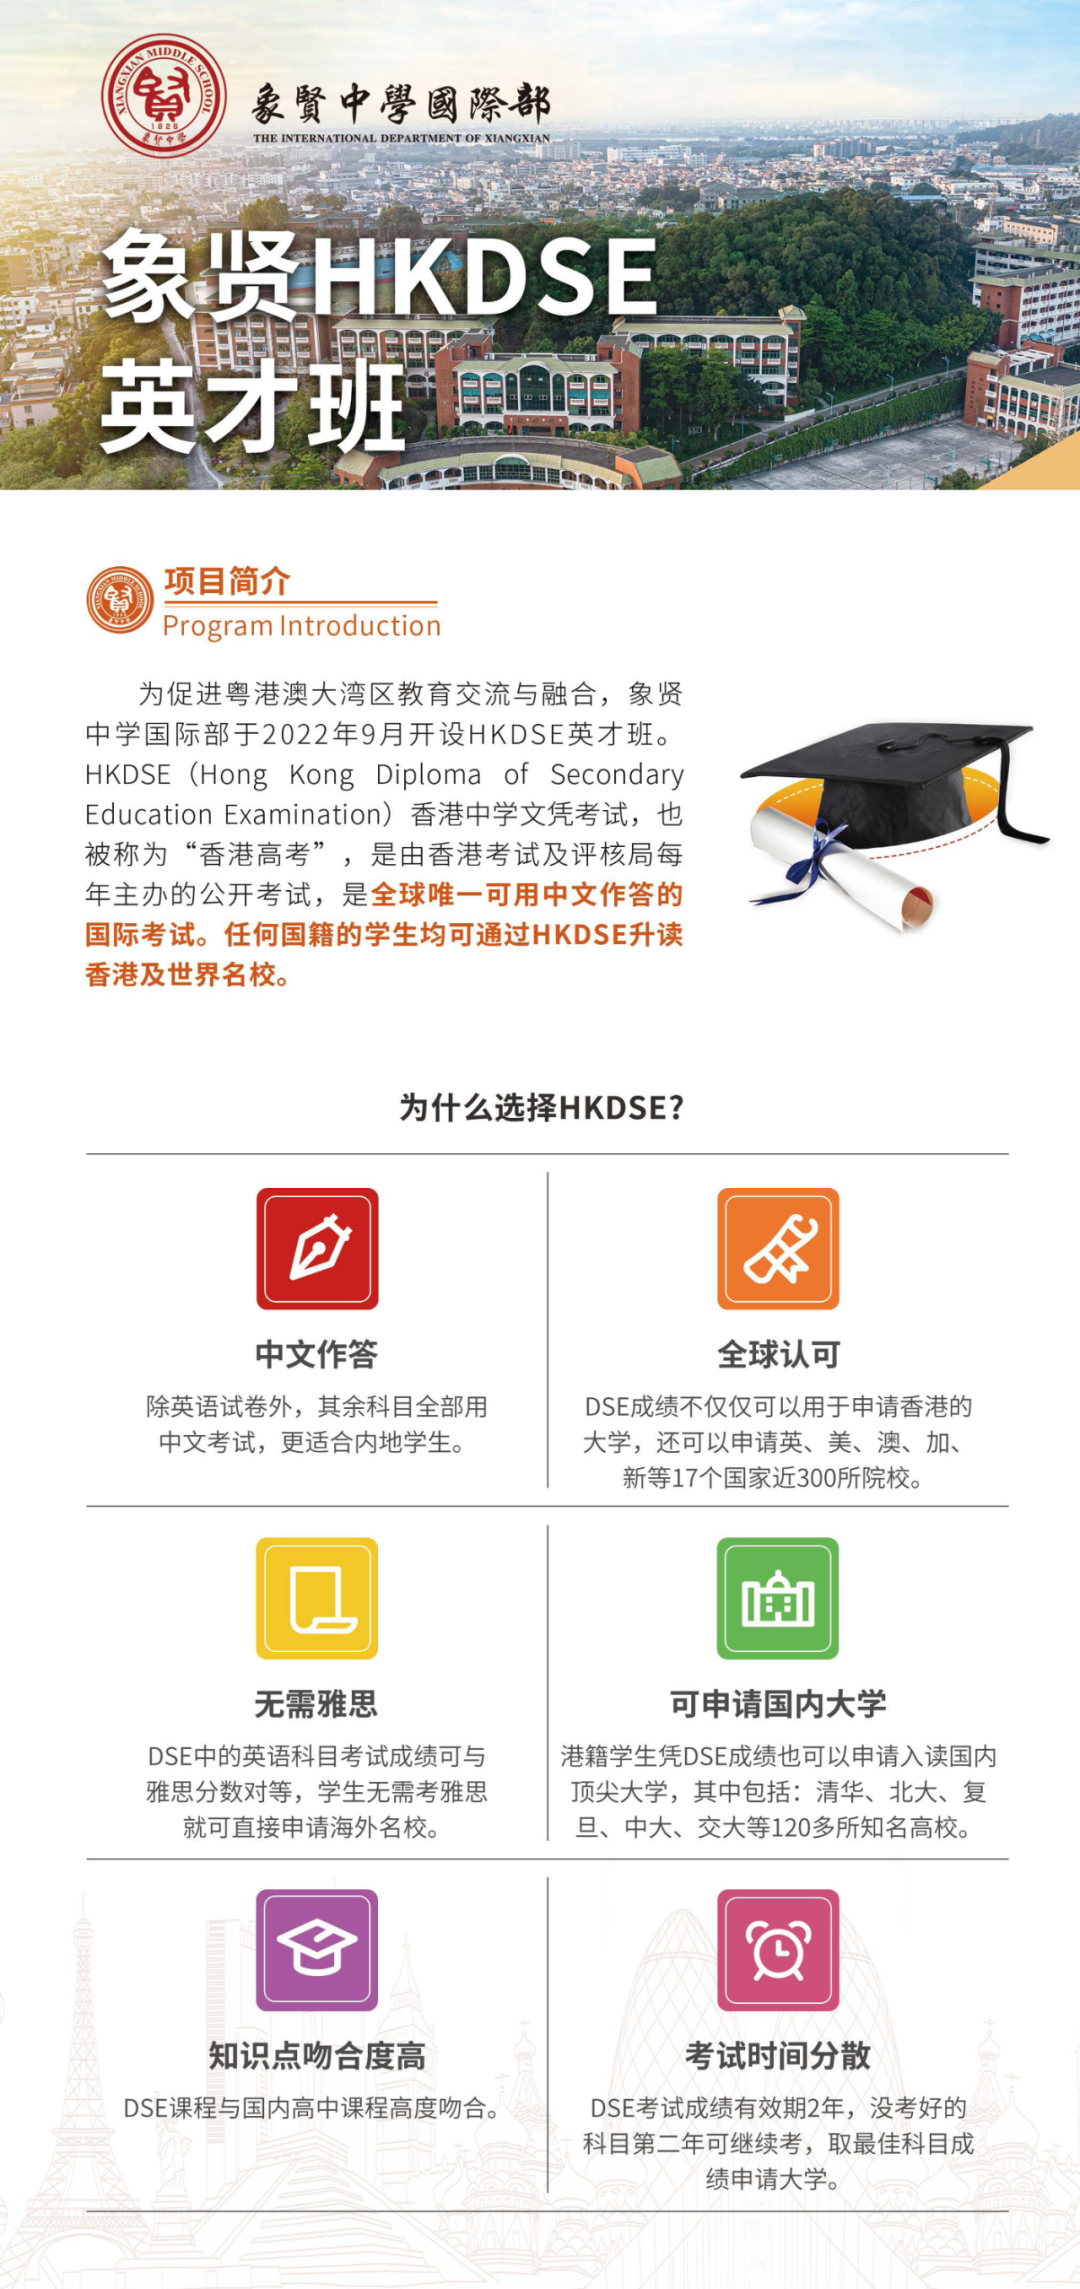 DSE干货分享 | 详细解析香港DSE、内地高考和华侨生联考的区别